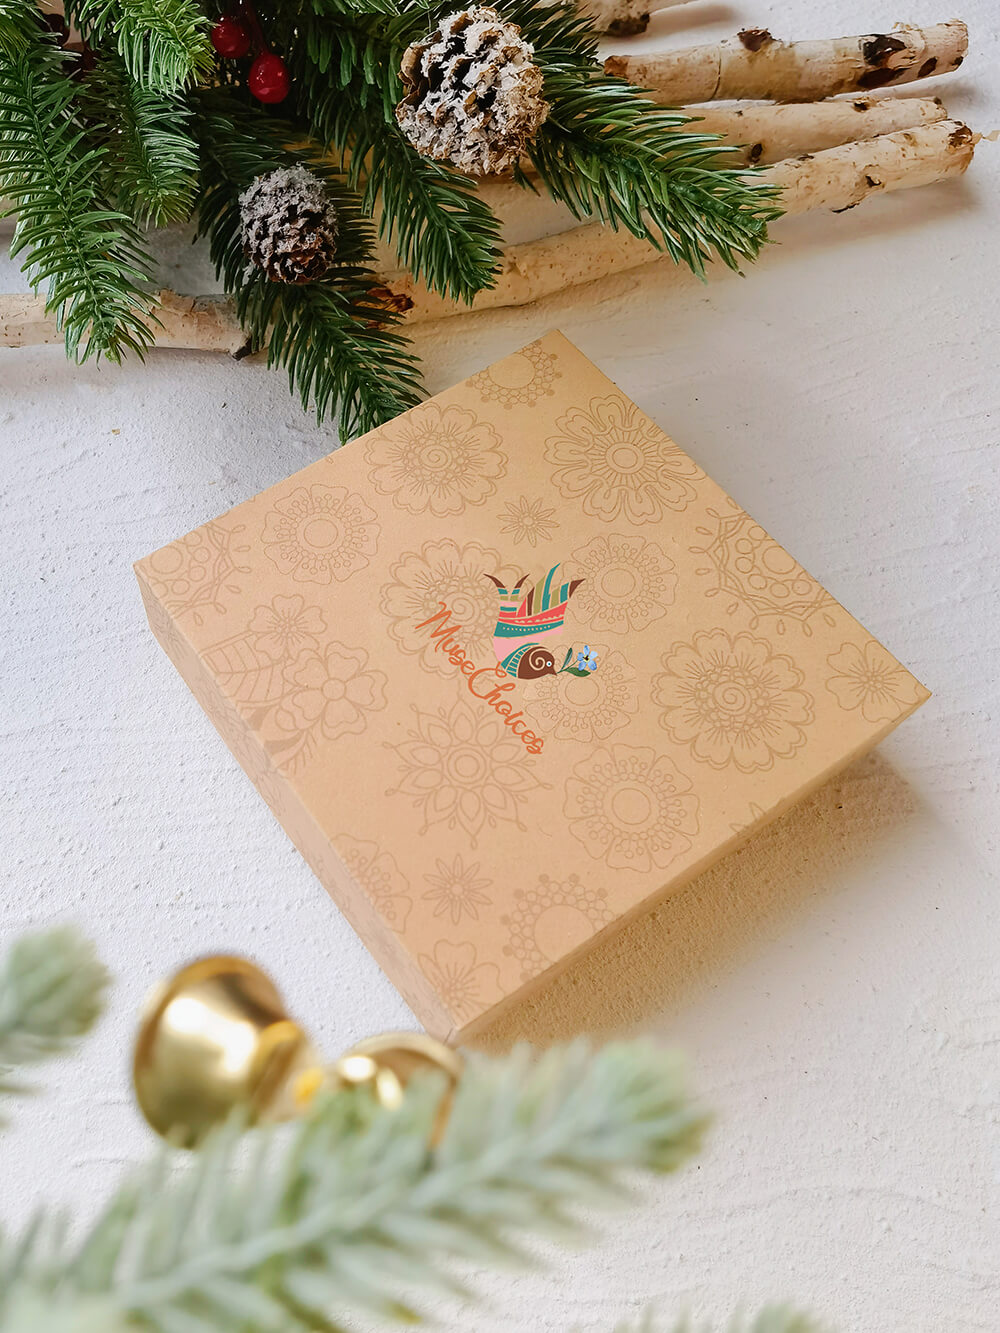 Pendiente de perlas de árbol de Navidad esmaltado